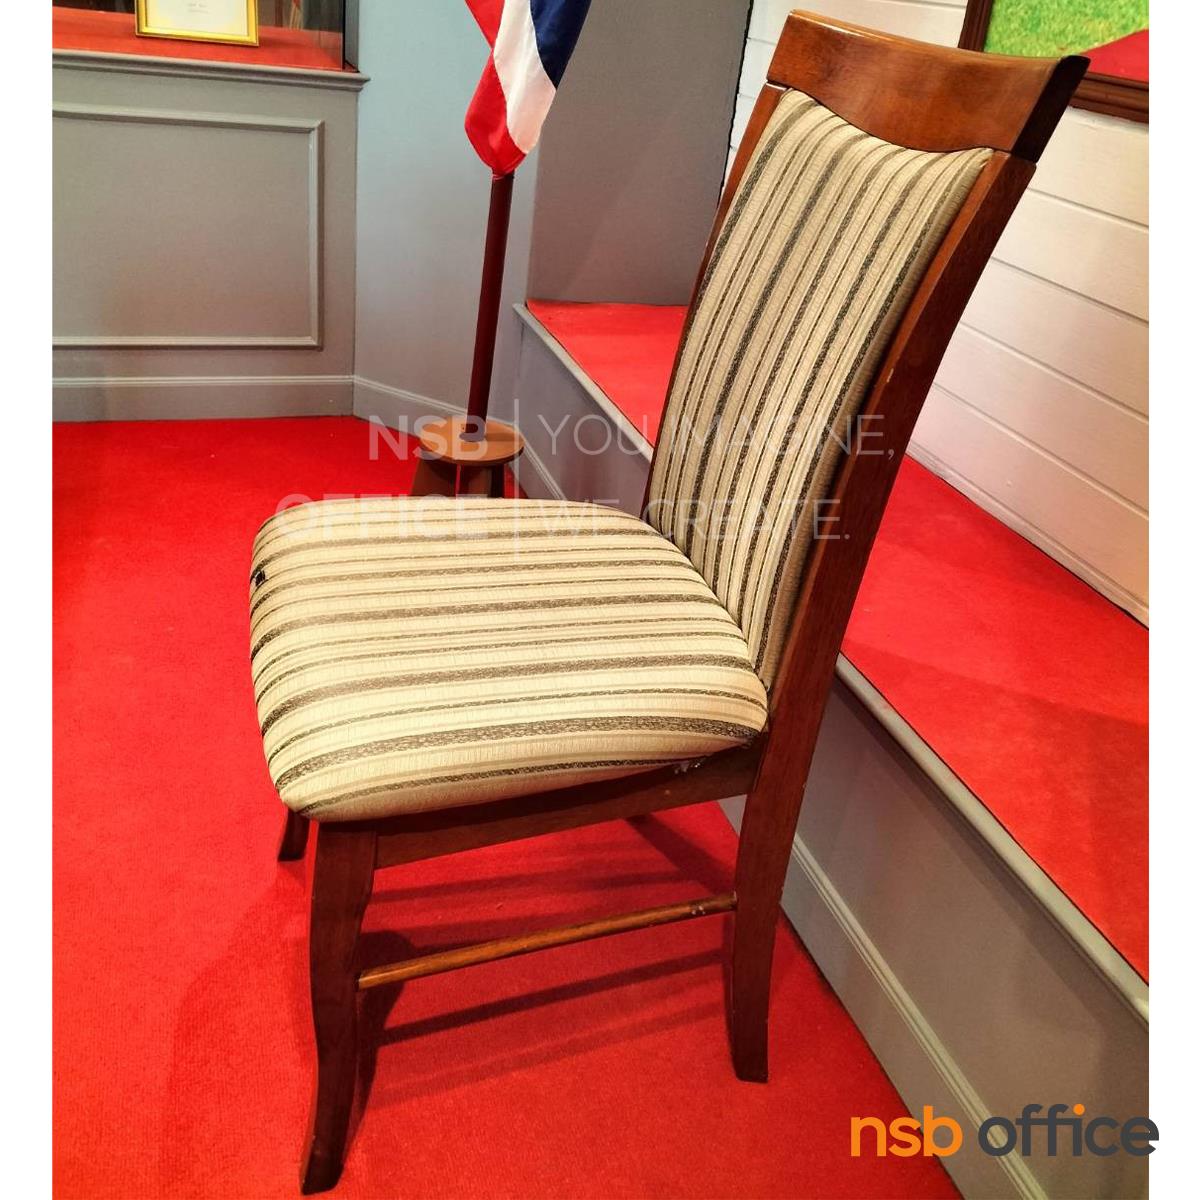 เก้าอี้ไม้ที่นั่งหนังเทียม รุ่น STABLE  ขาไม้ สีน้ำตาลแดง